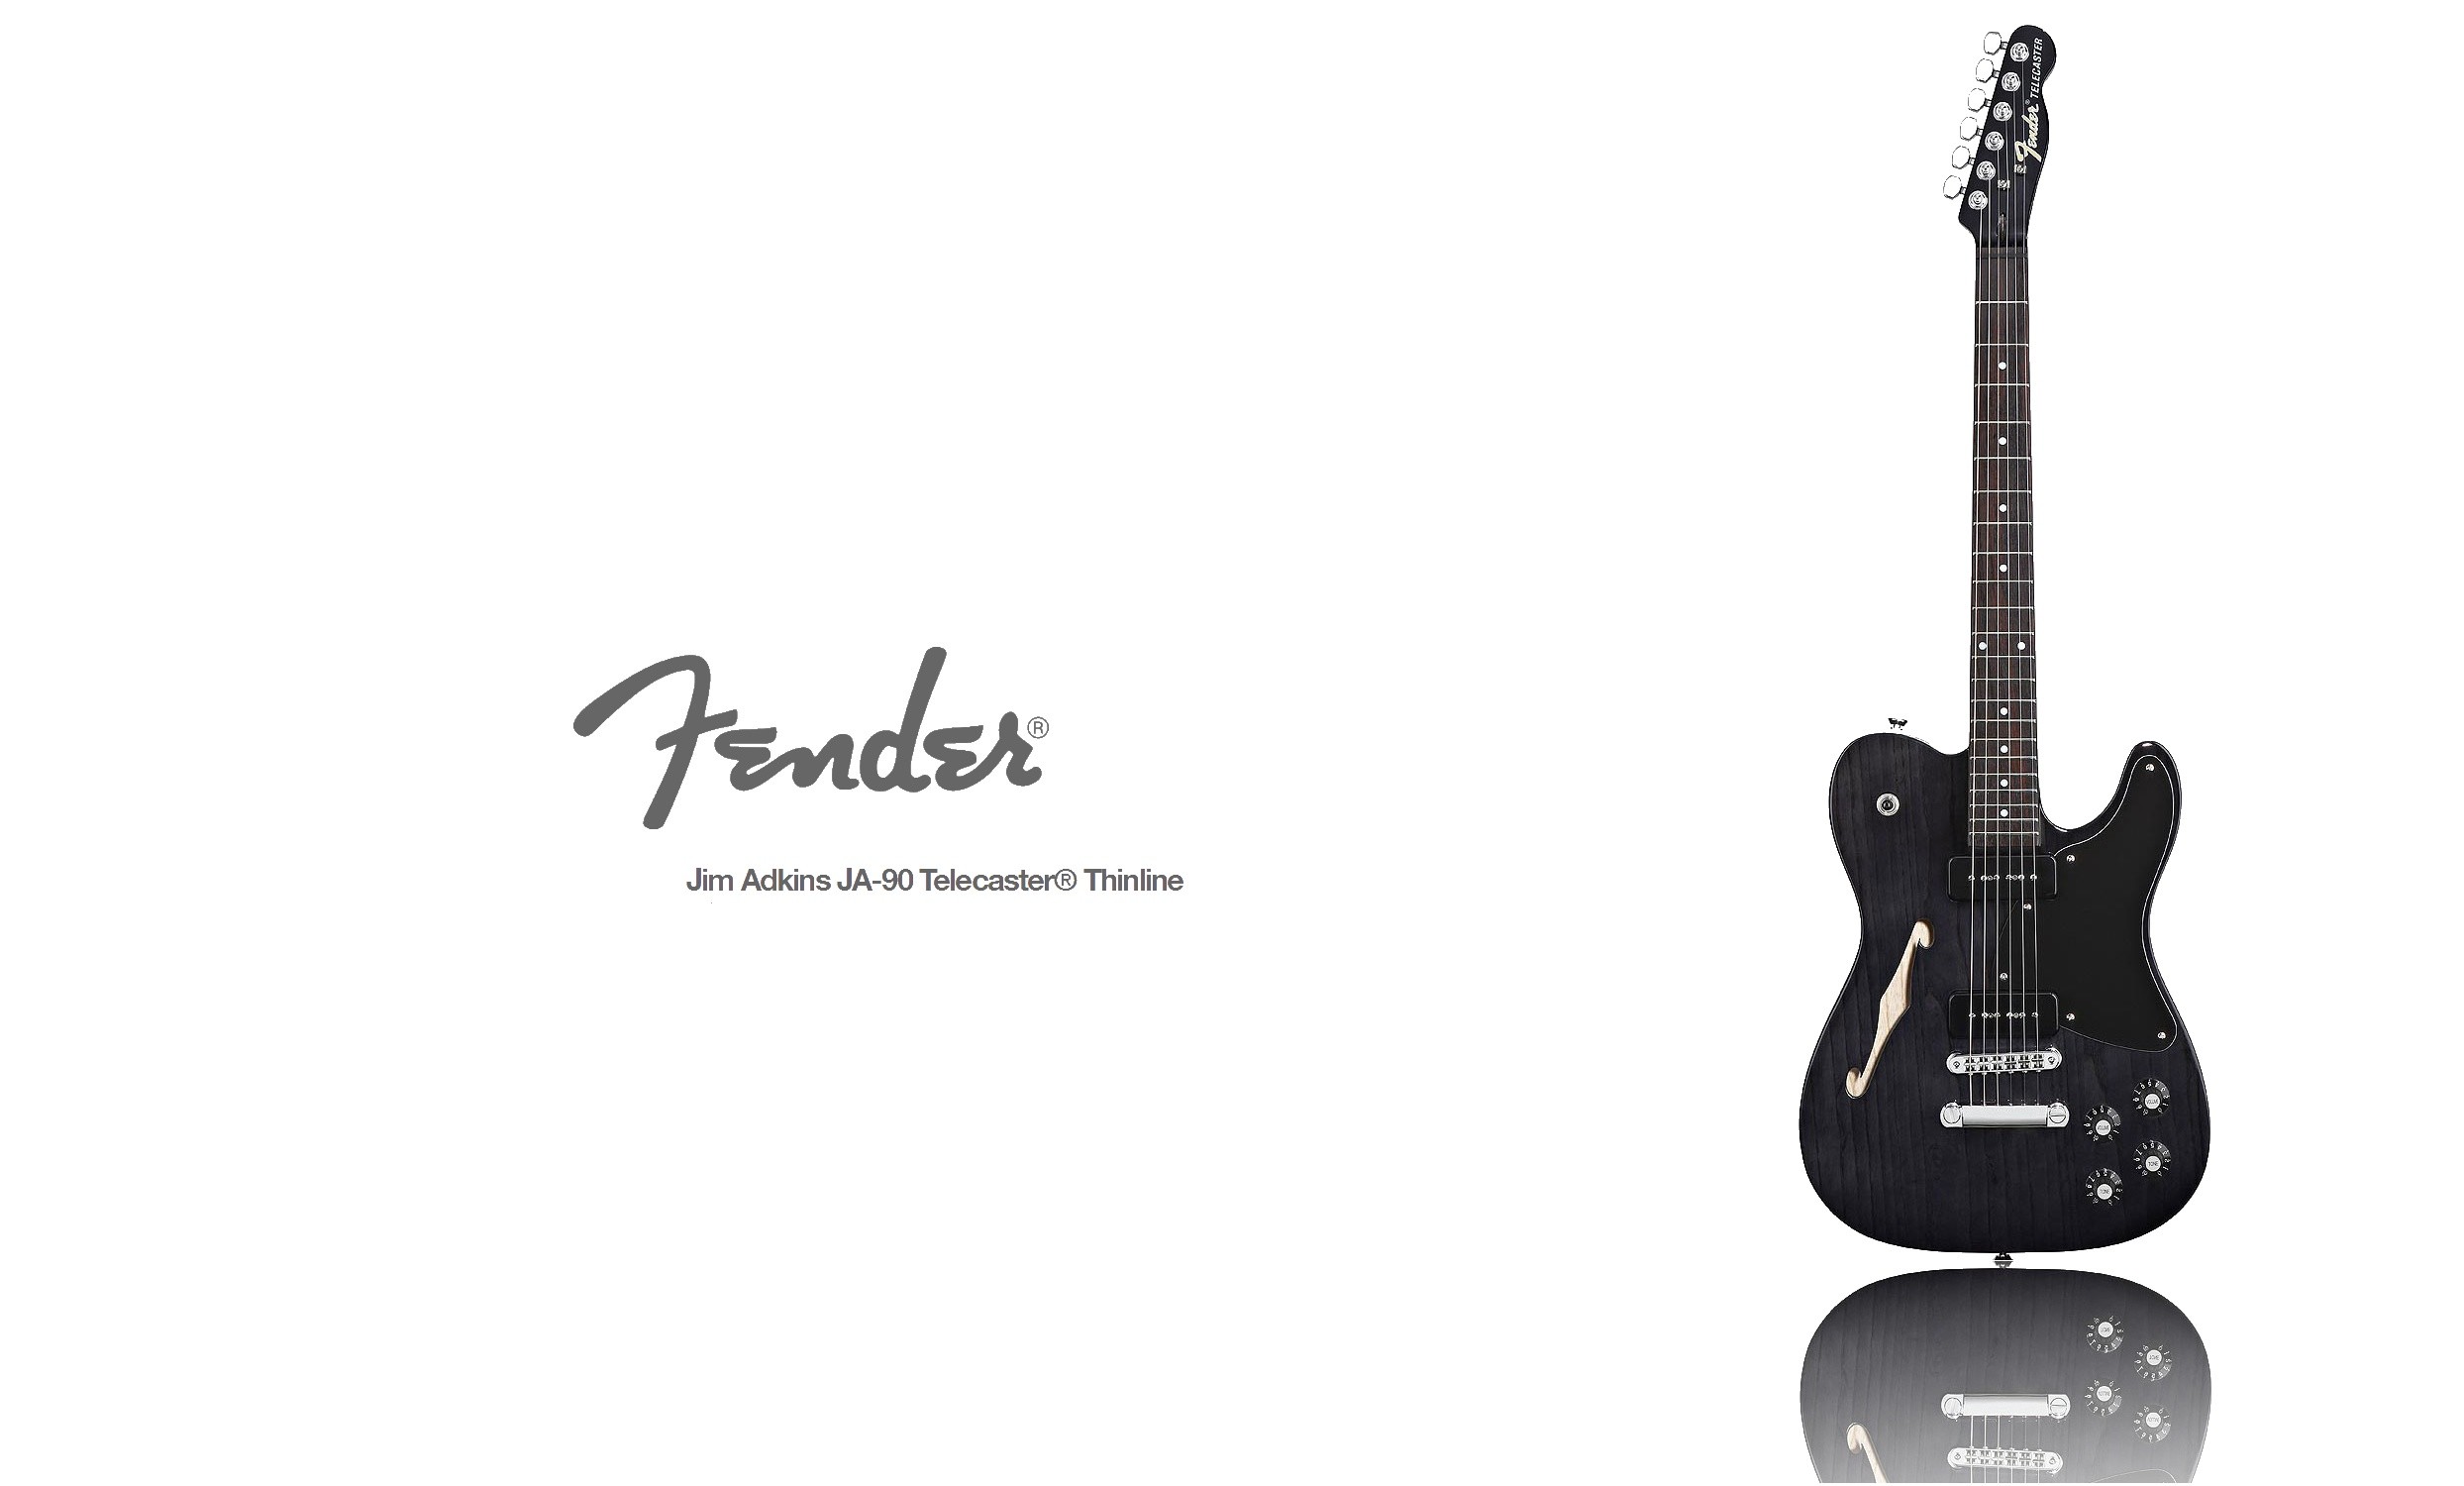 2488x1500 ... Nouvelle collection de fonds d'Ã©cran Fender et Gibson Electric Guitar  Black Background ...